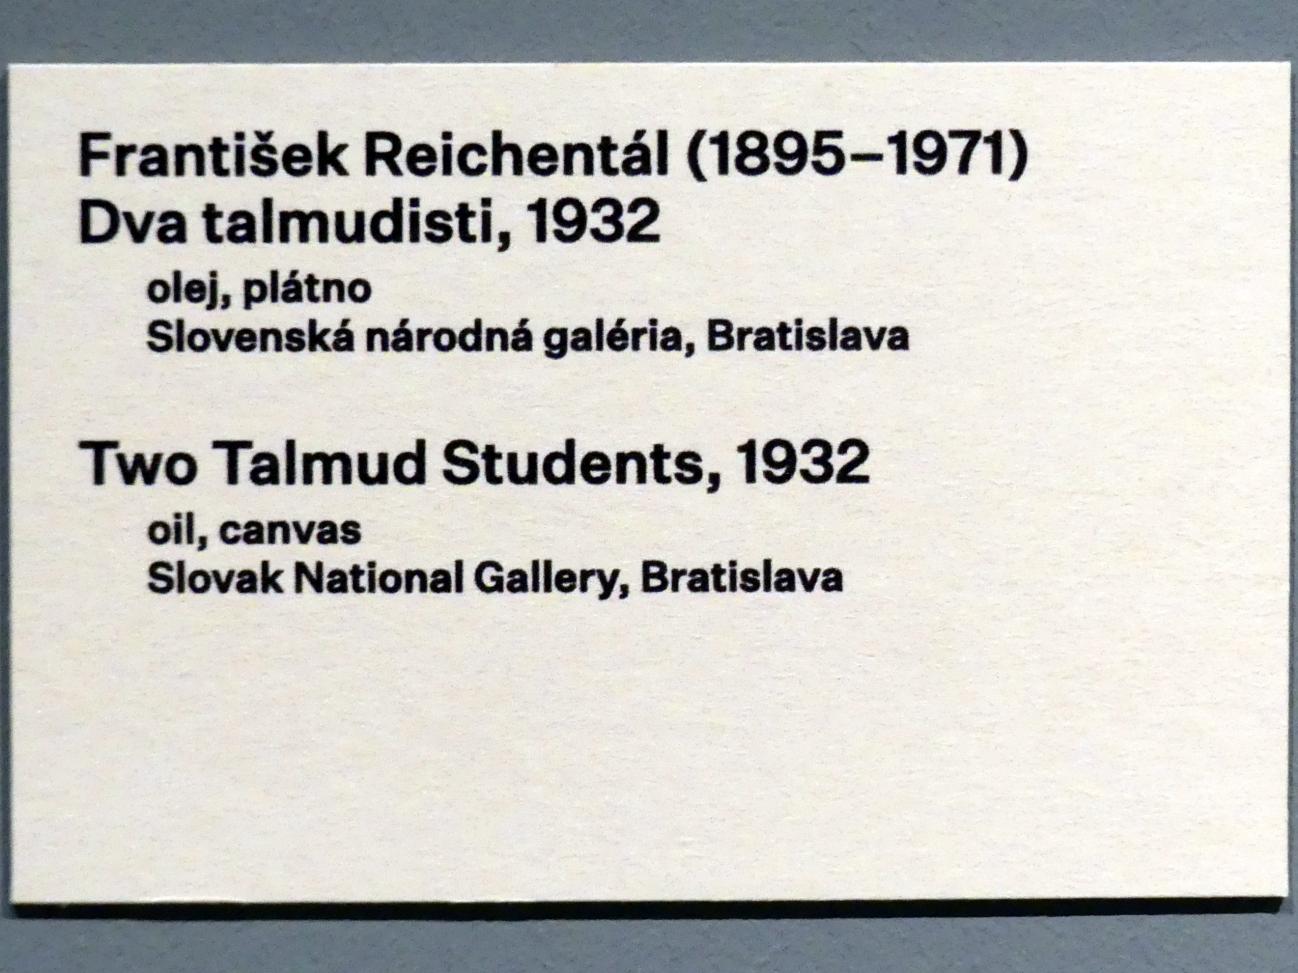 František Reichentál (1932), Zwei Talmud-Studenten, Prag, Nationalgalerie im Messepalast, 1918-1939, Saal 16, 1932, Bild 2/2